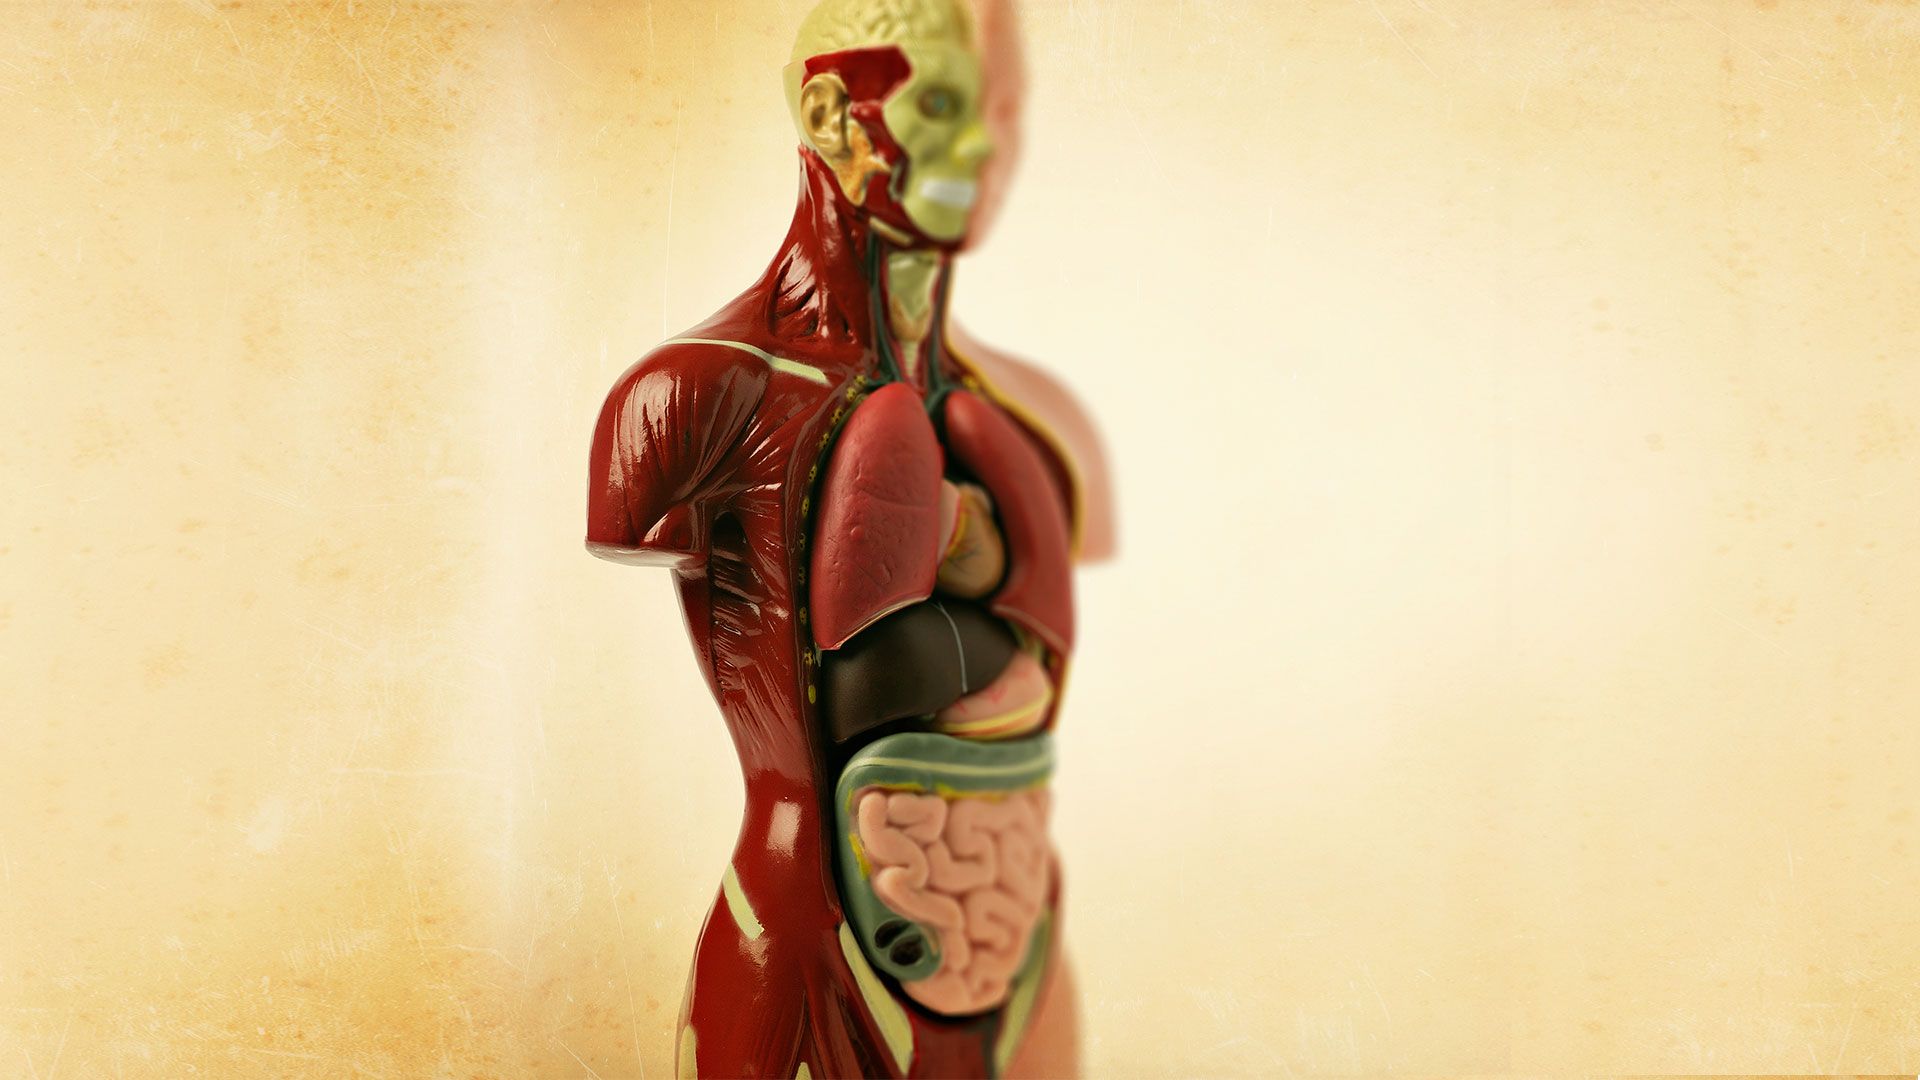 Promotional image for Можно ли быть донором органов?